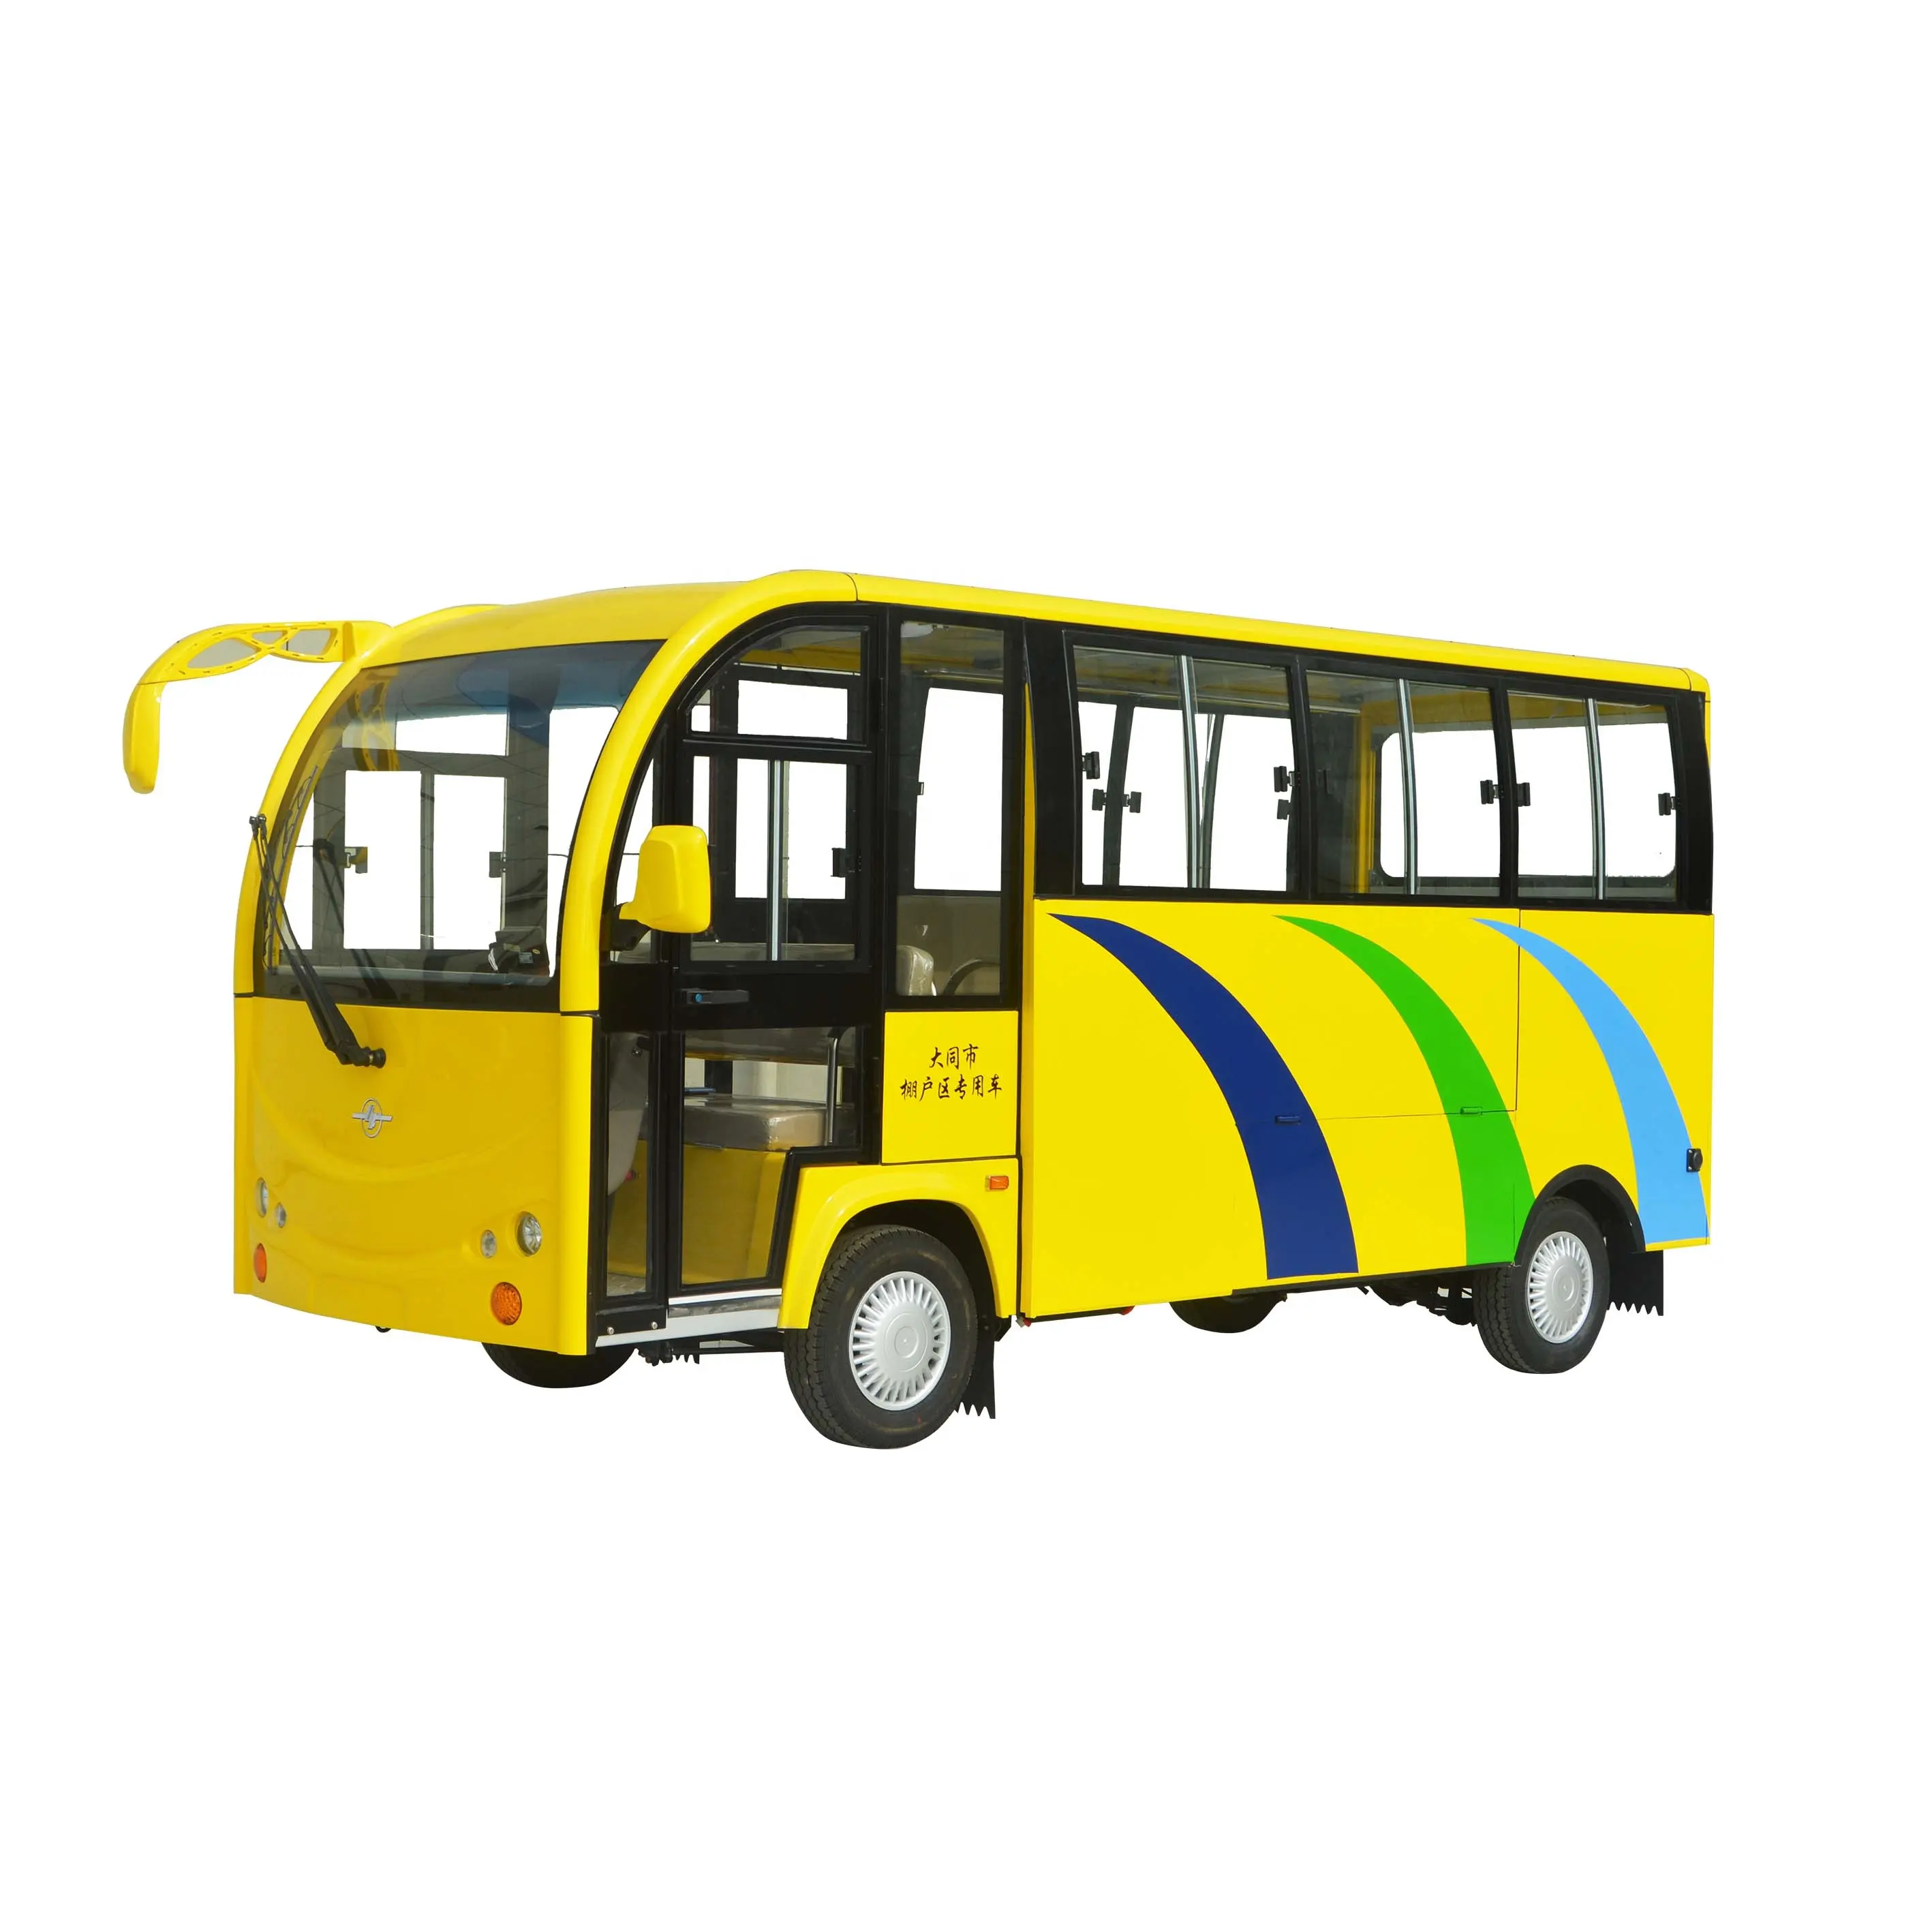 Coche eléctrico de 17 pasajeros con puerta, vehículo turístico con puerta, autobús turístico